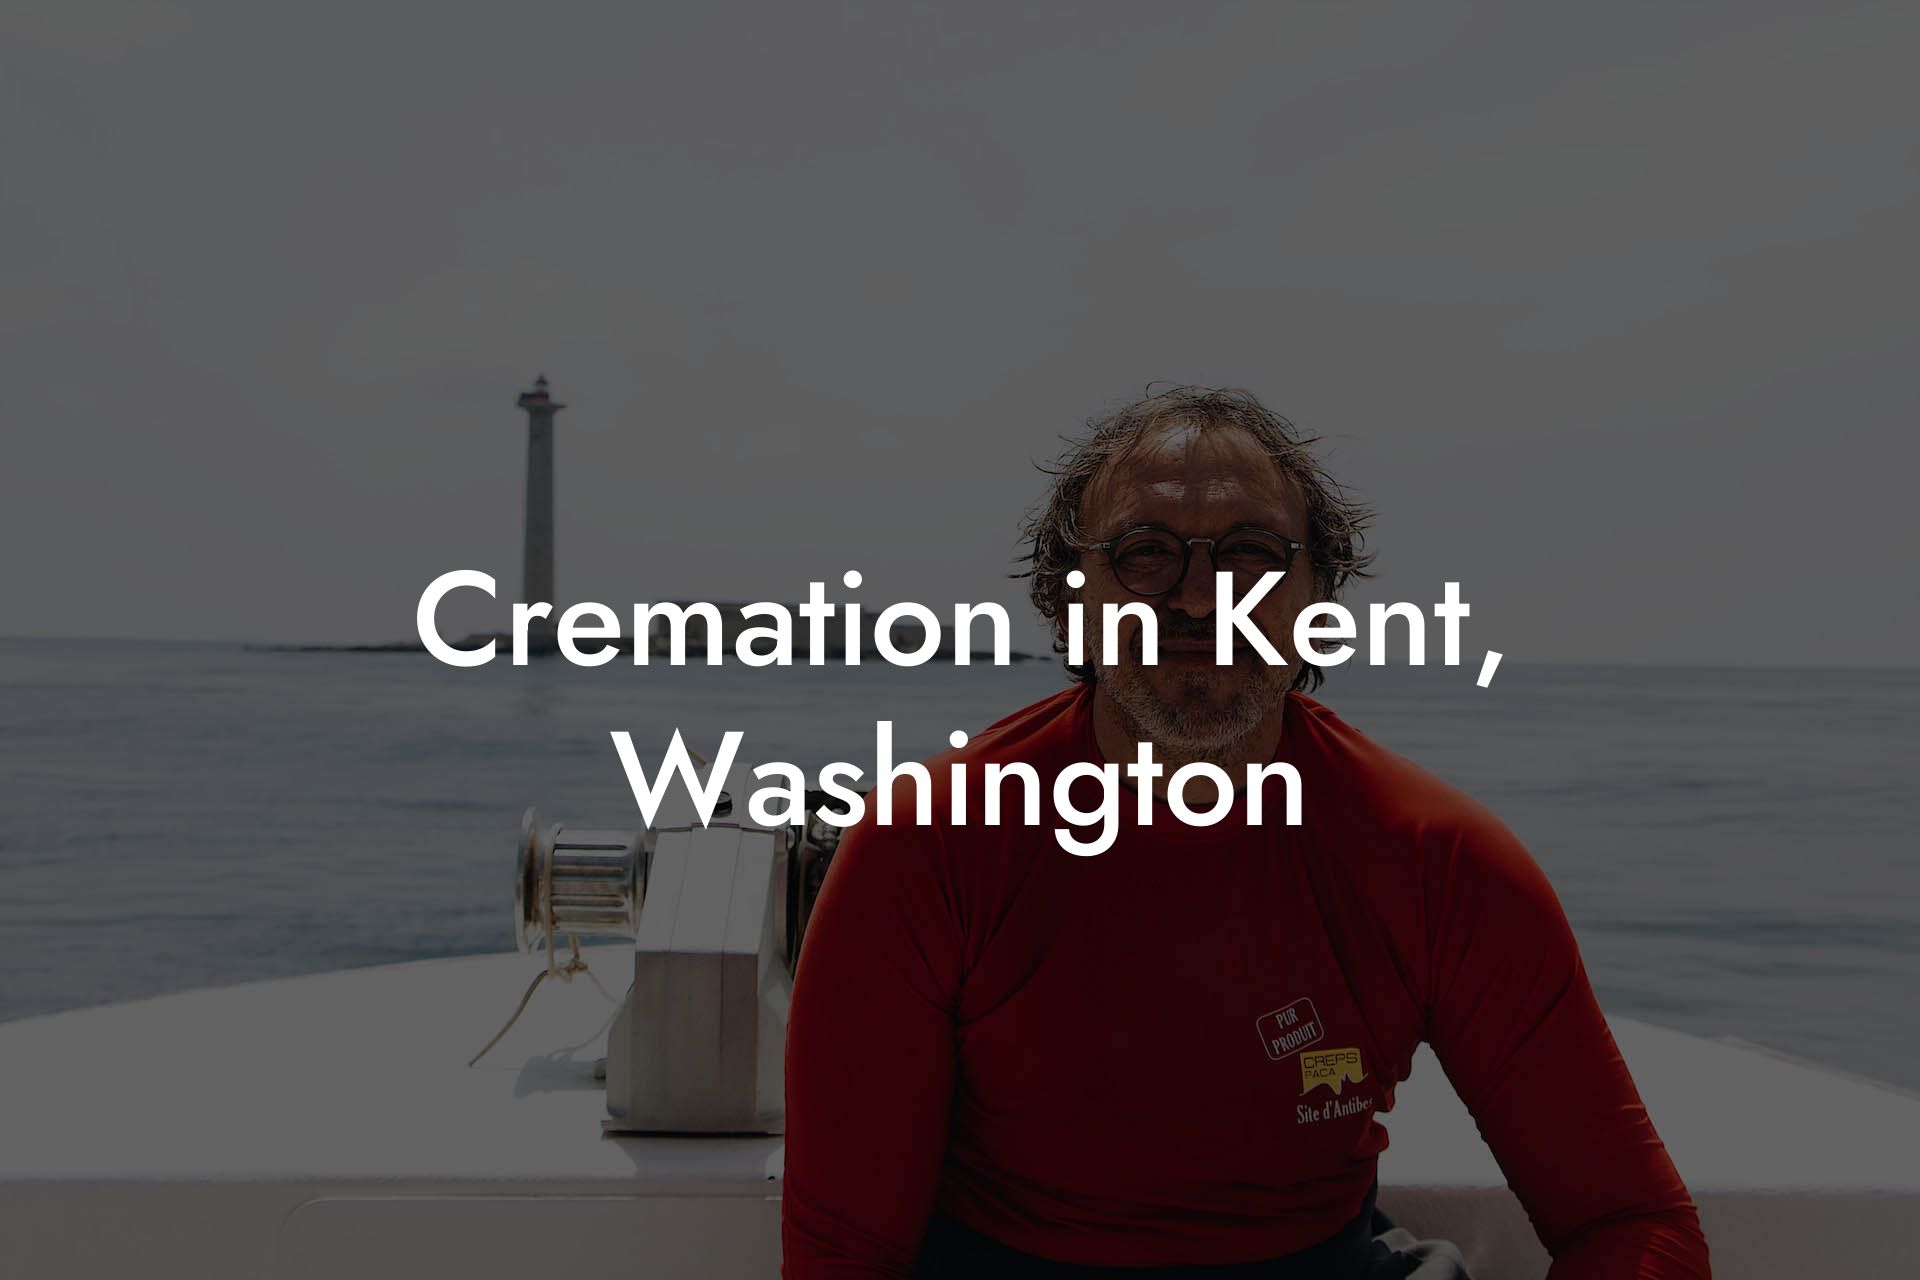 Cremation in Kent, Washington